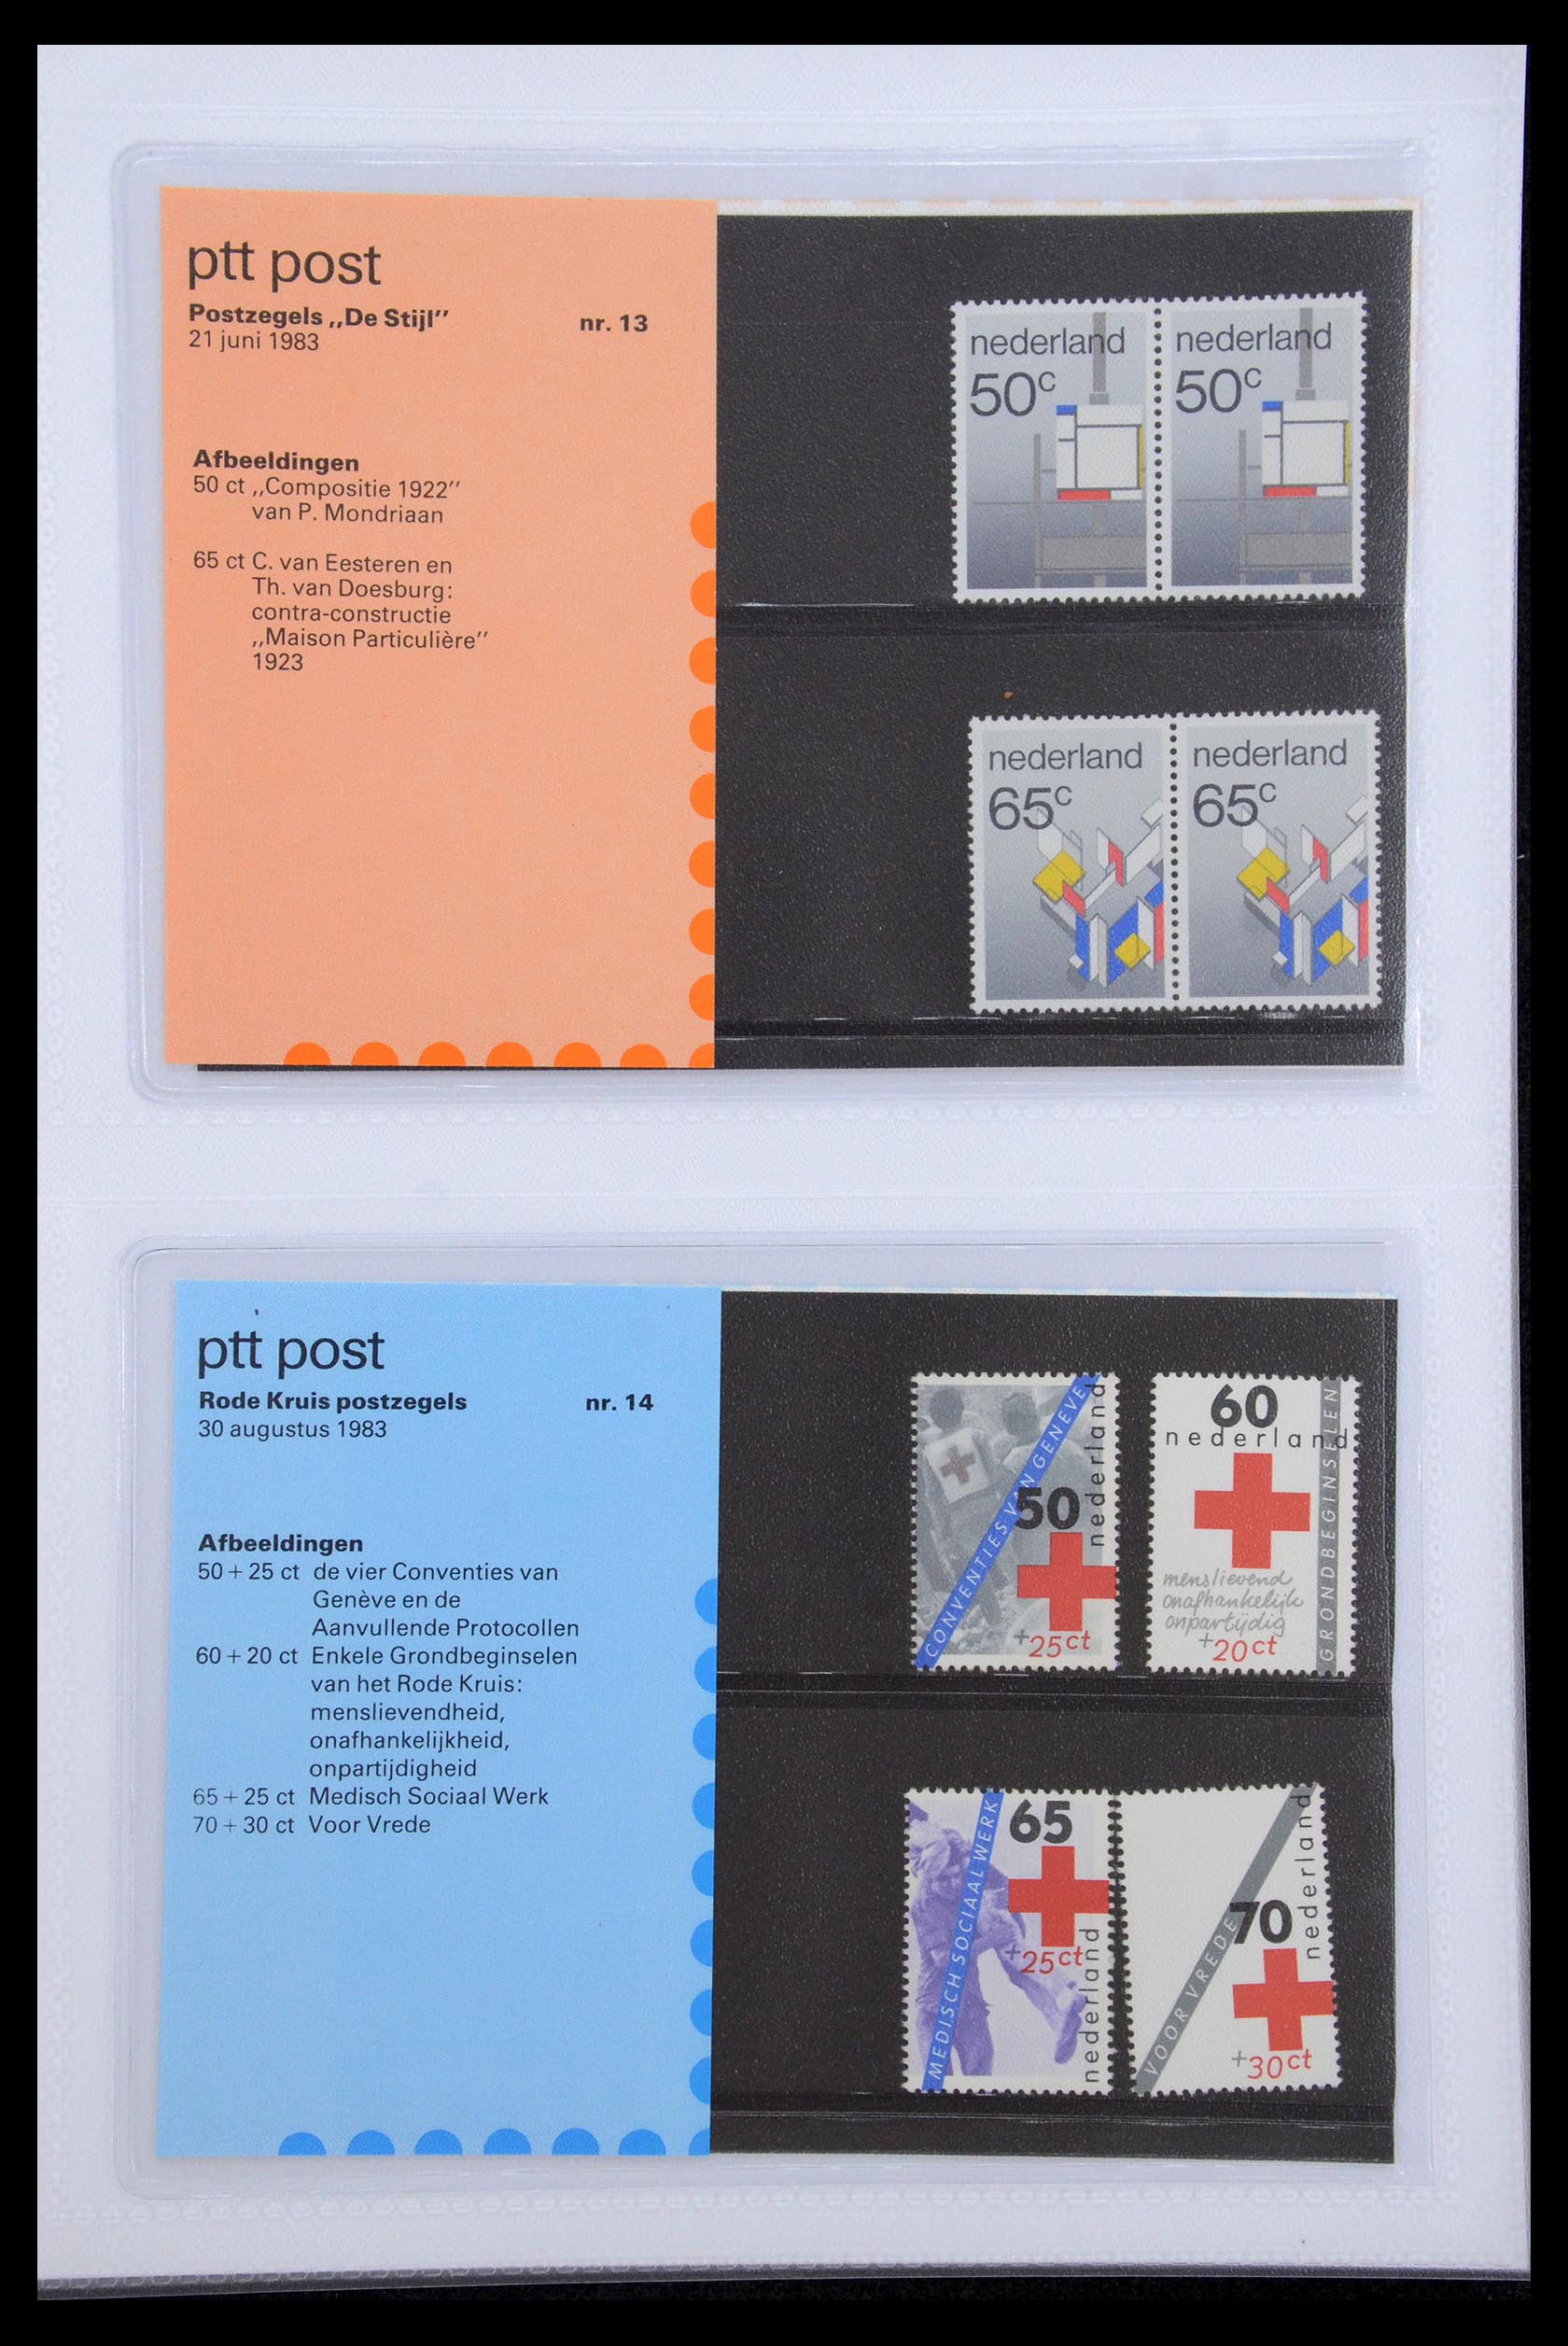 35947 007 - Stamp Collection 35947 Netherlands PTT presentation packs 1982-2019!